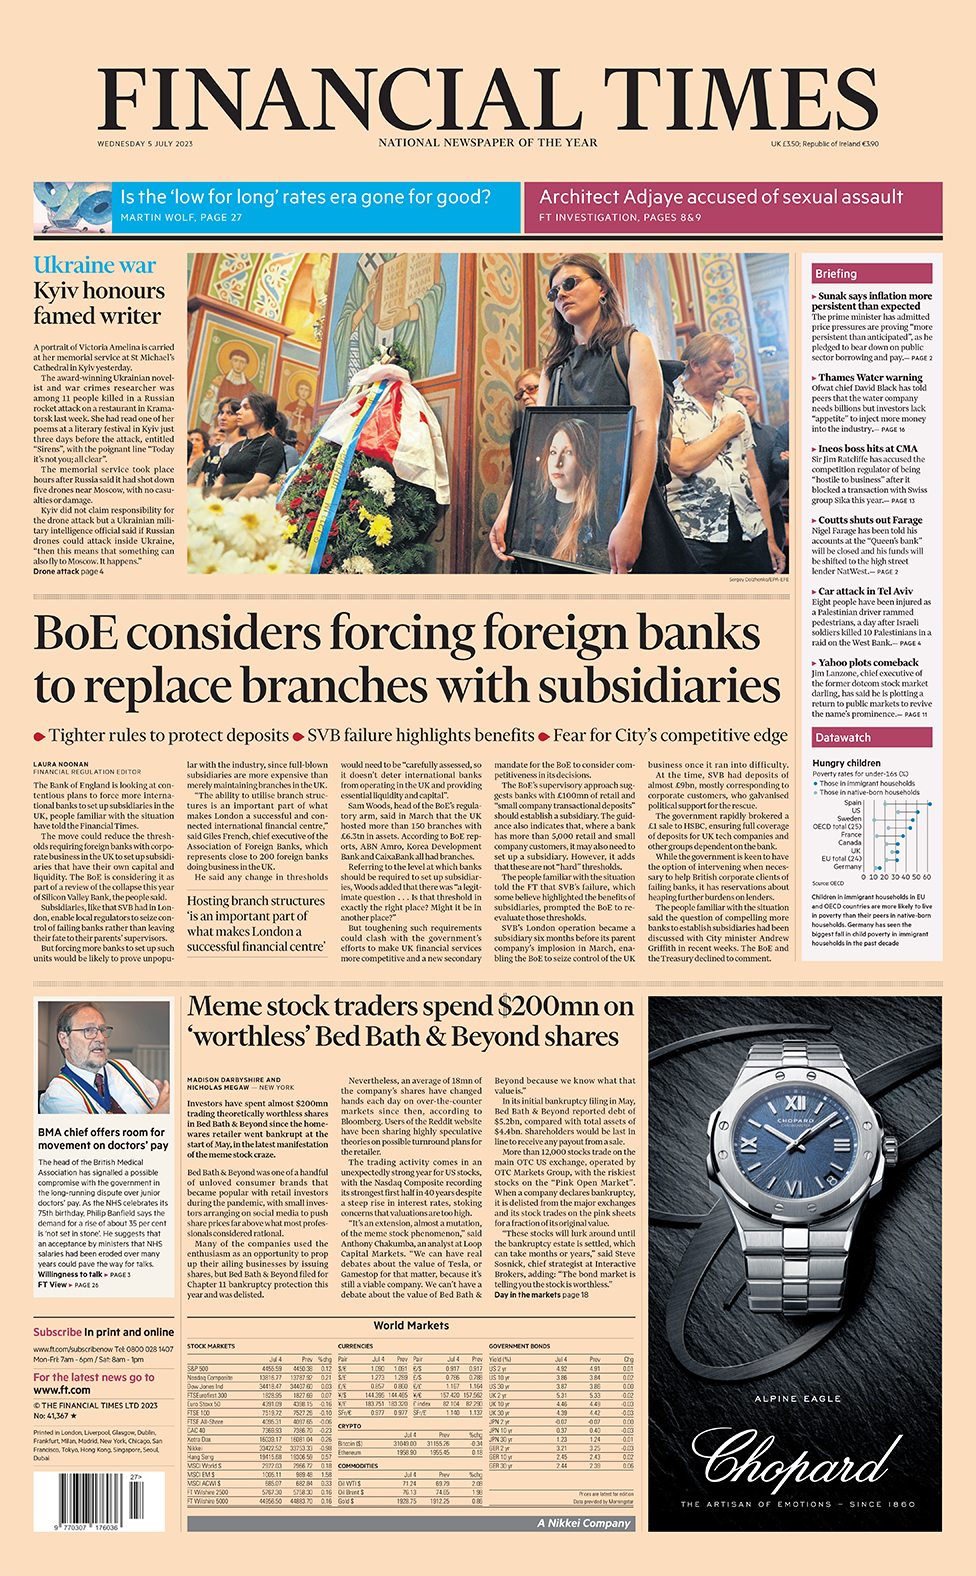 Главный заголовок на первой полосе Financial Times гласит: «Банк Англии рассматривает возможность заставить иностранные банки заменить филиалы дочерними компаниями»